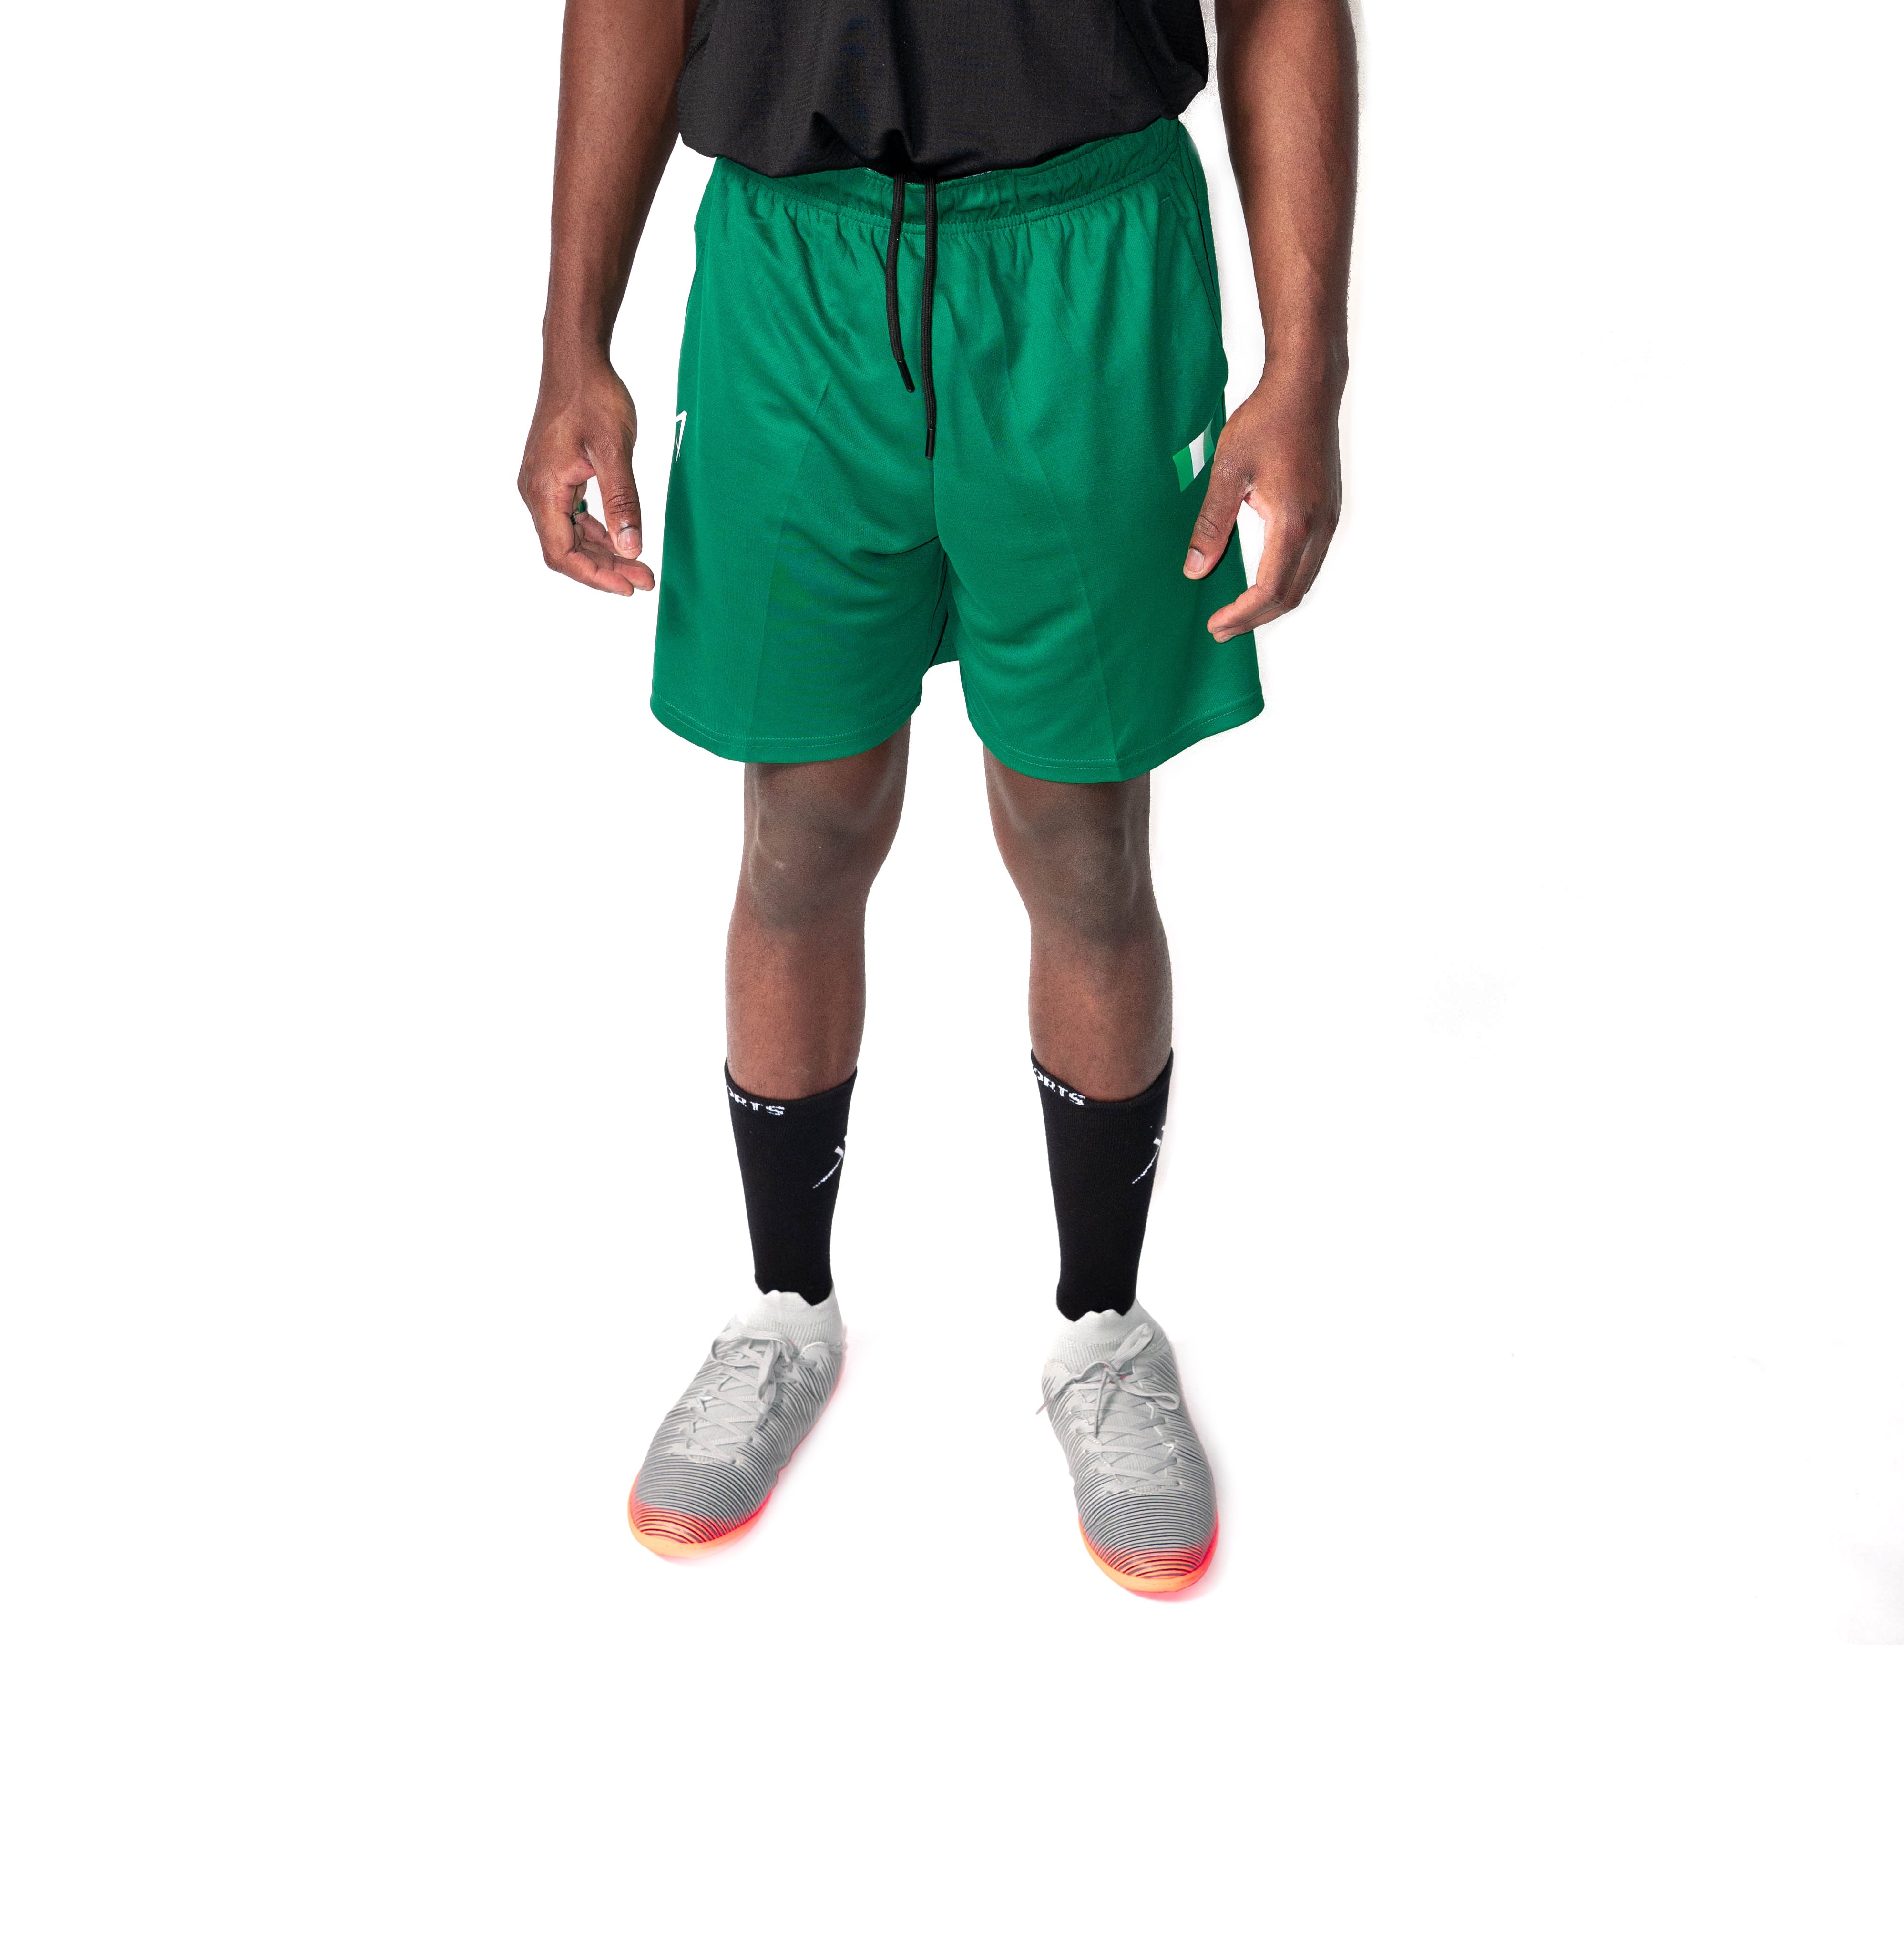 Men's Jersey Shorts - Green